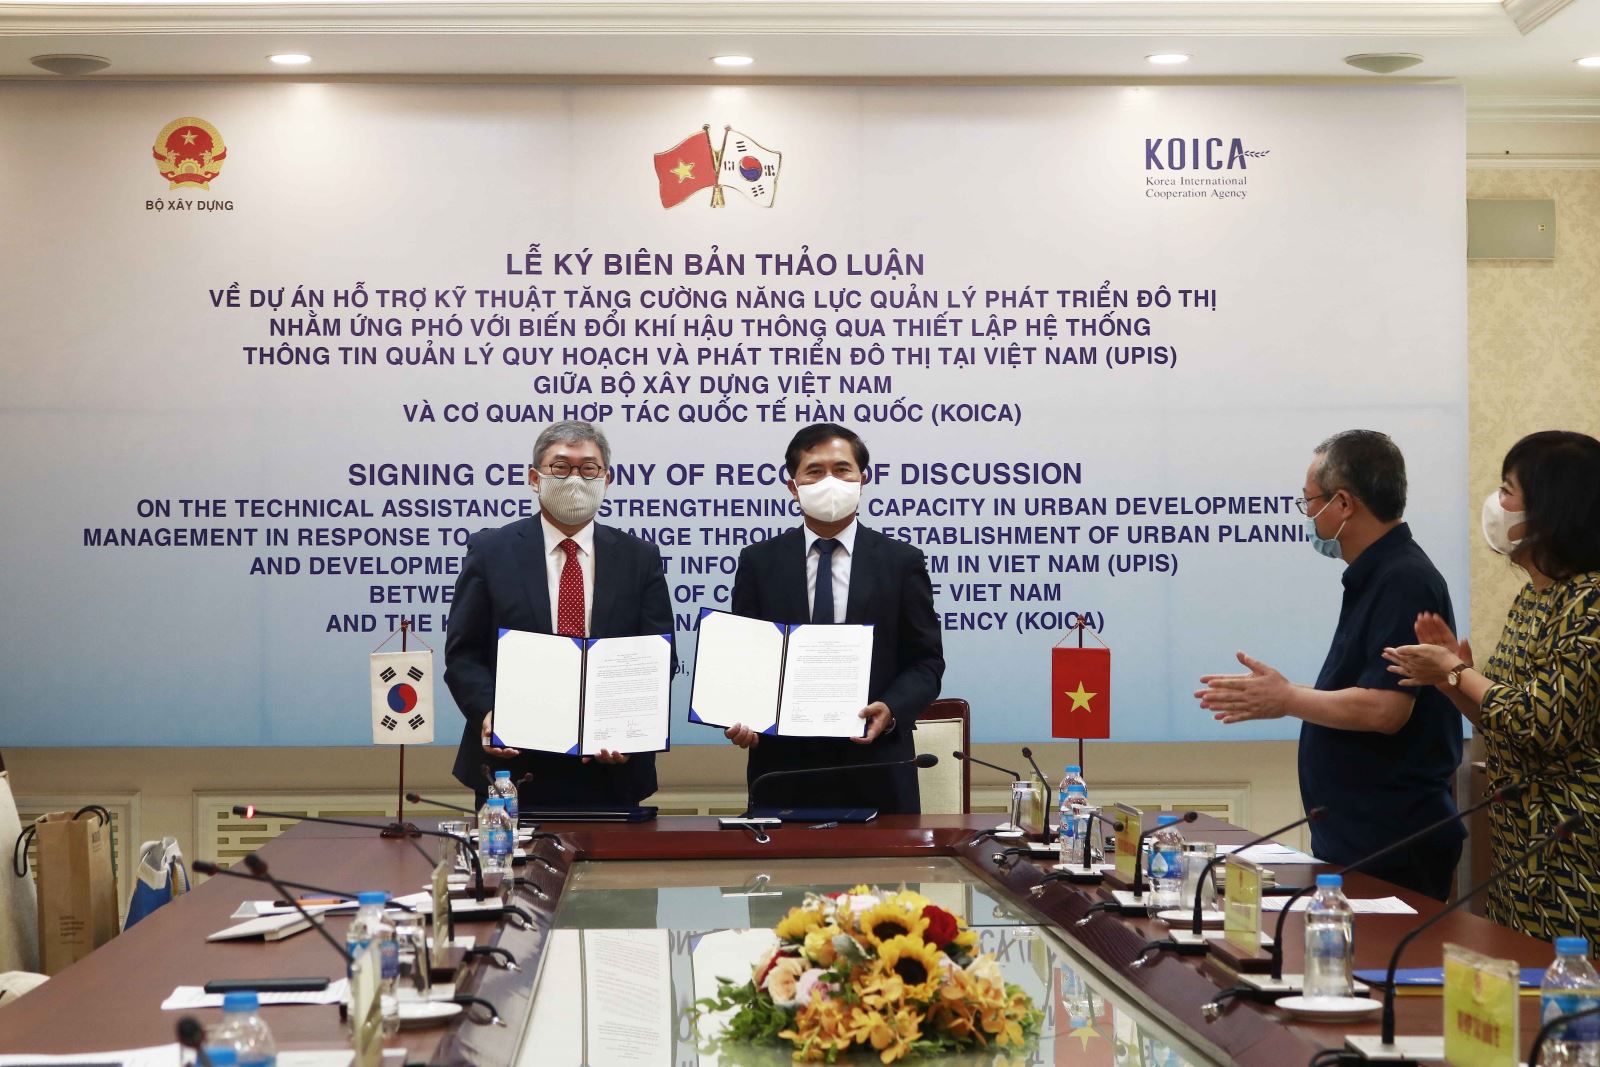 Thứ trưởng Bộ Xây dựng Lê Quang Hùng và Giám đốc quốc gia Văn phòng KOIKA tại Việt Nam Cho Han-Deog cùng ký kết Biên bản thảo luận